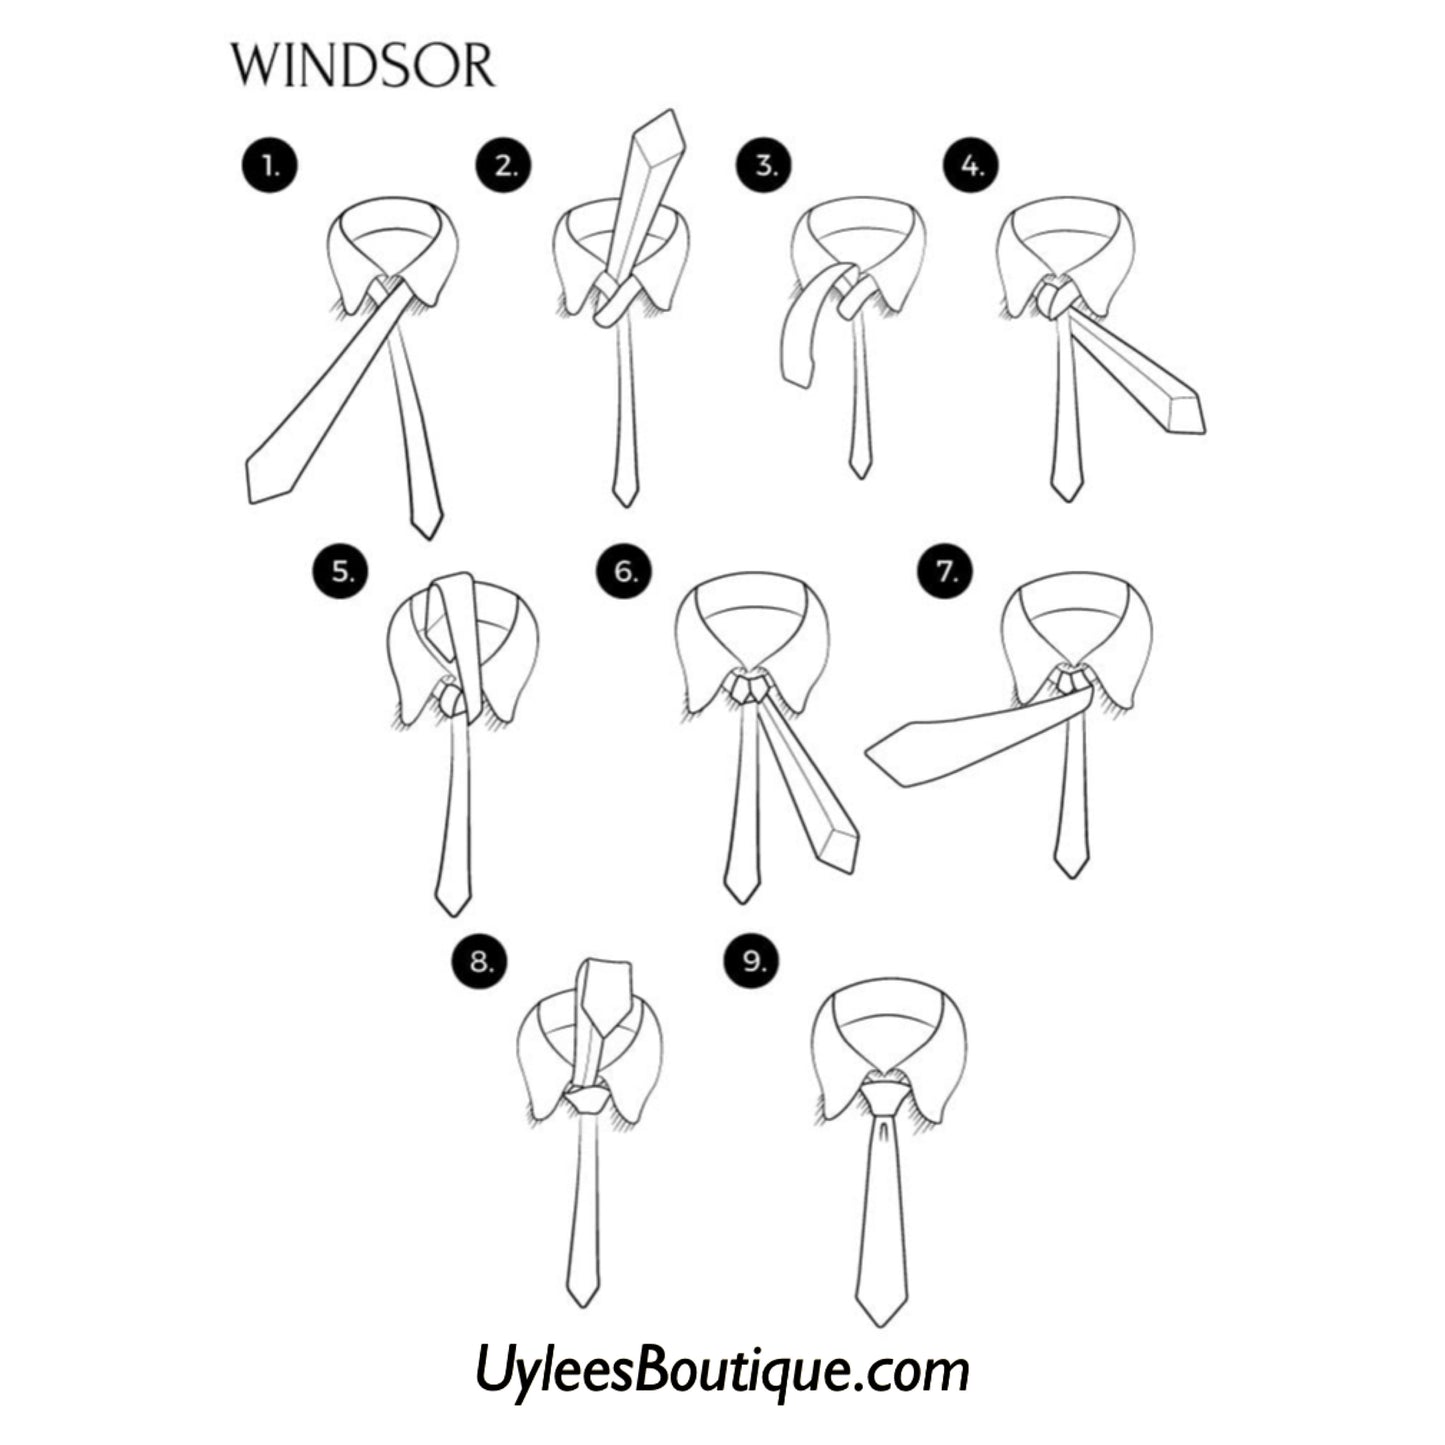 Men’s Silk Coordinated Tie Set - Teal Black Puzzled (5977)